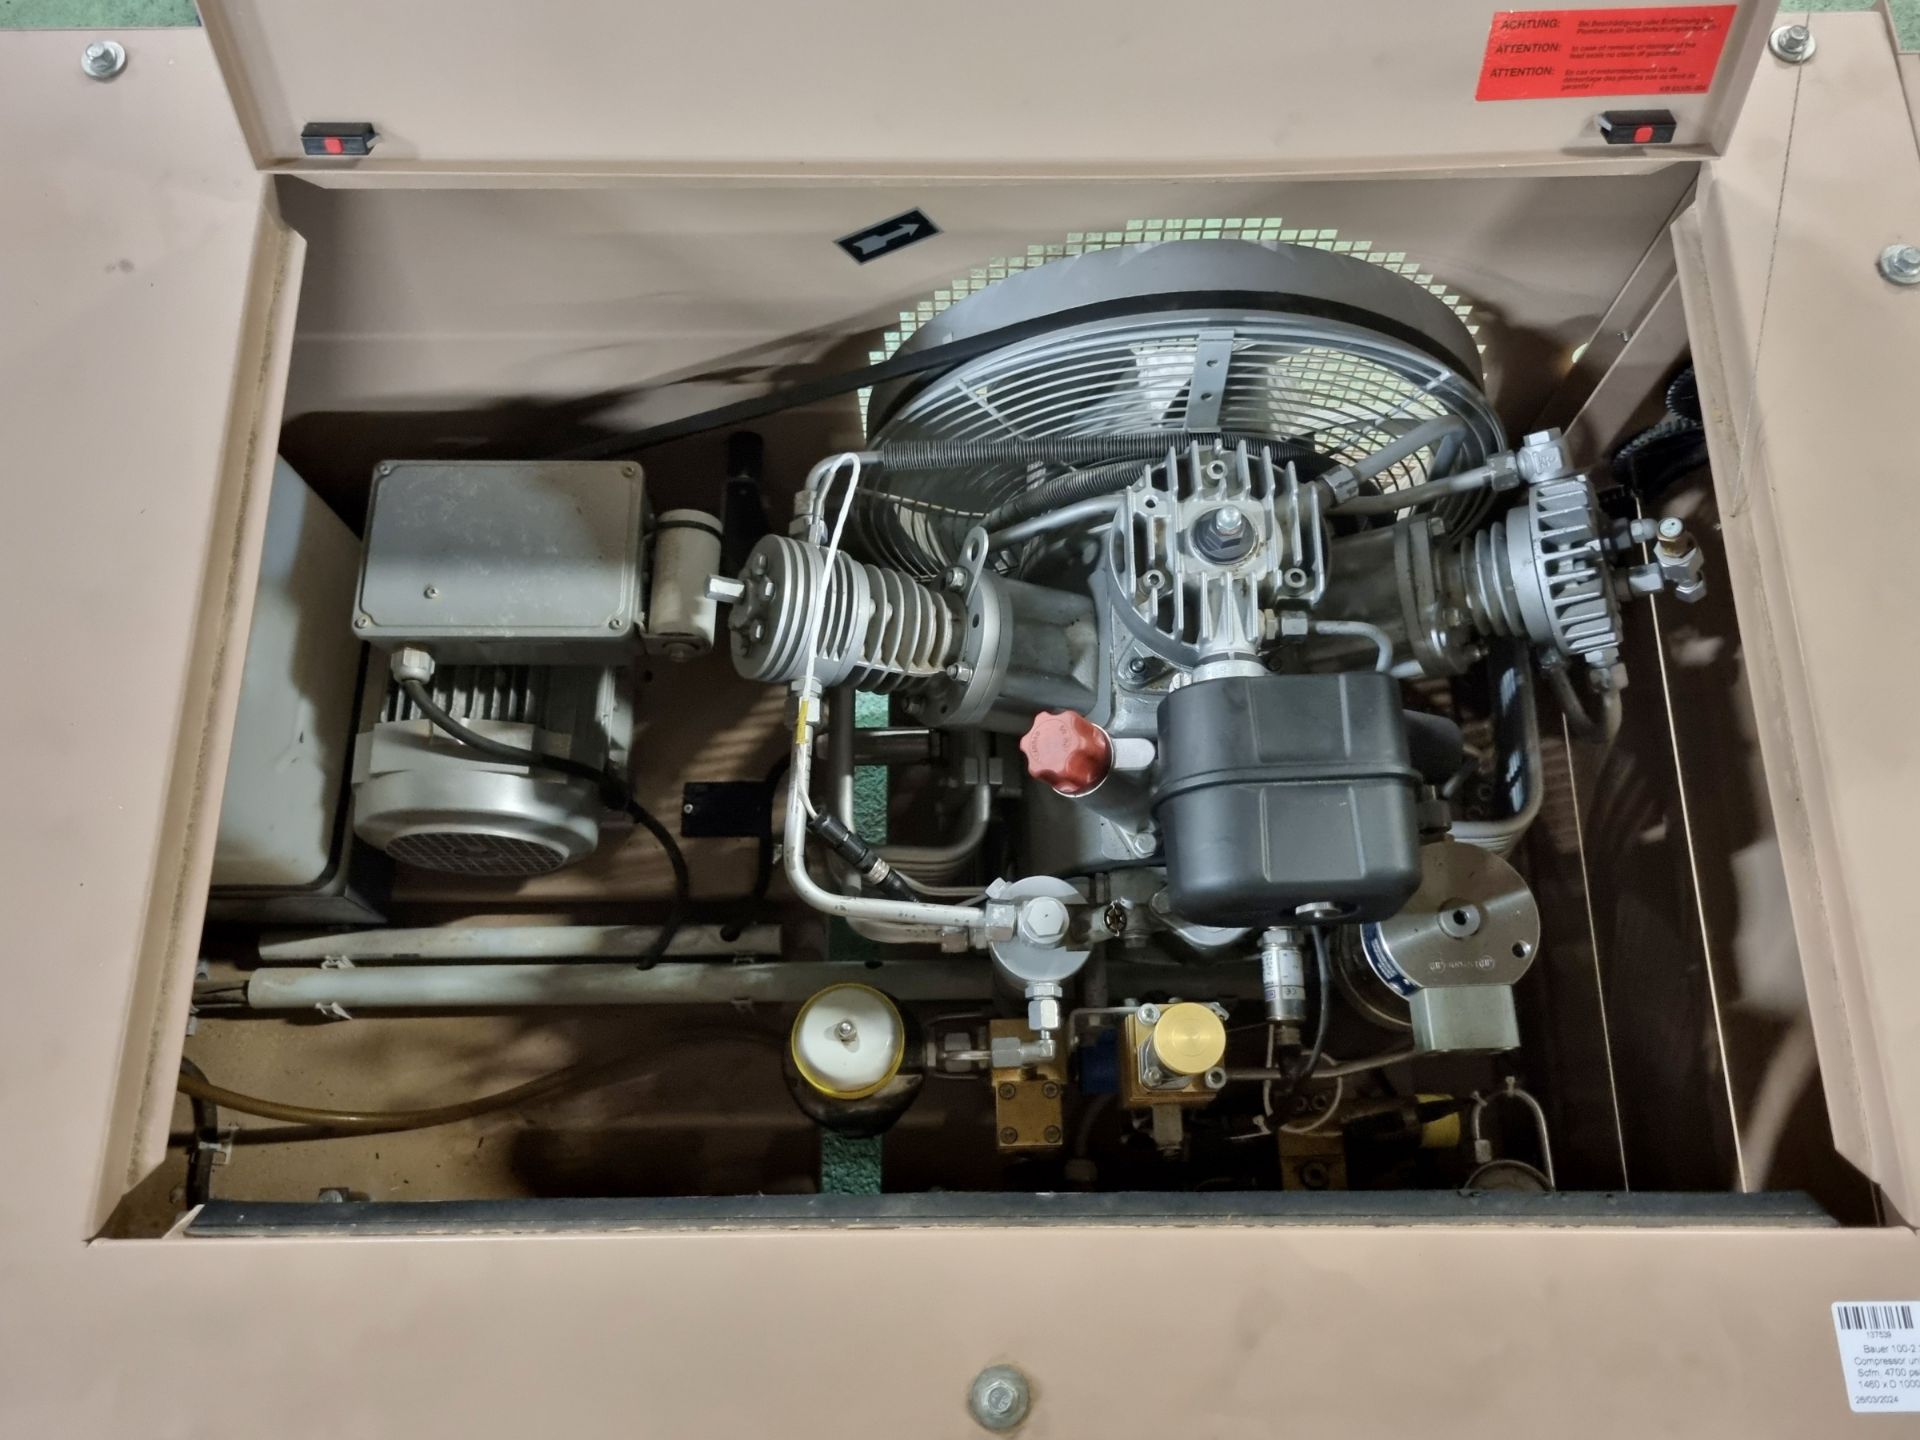 Bauer 100-2.2-H-M01 Compressor & Kompressoren CPF450-M01 cylinder refill system - Image 5 of 17